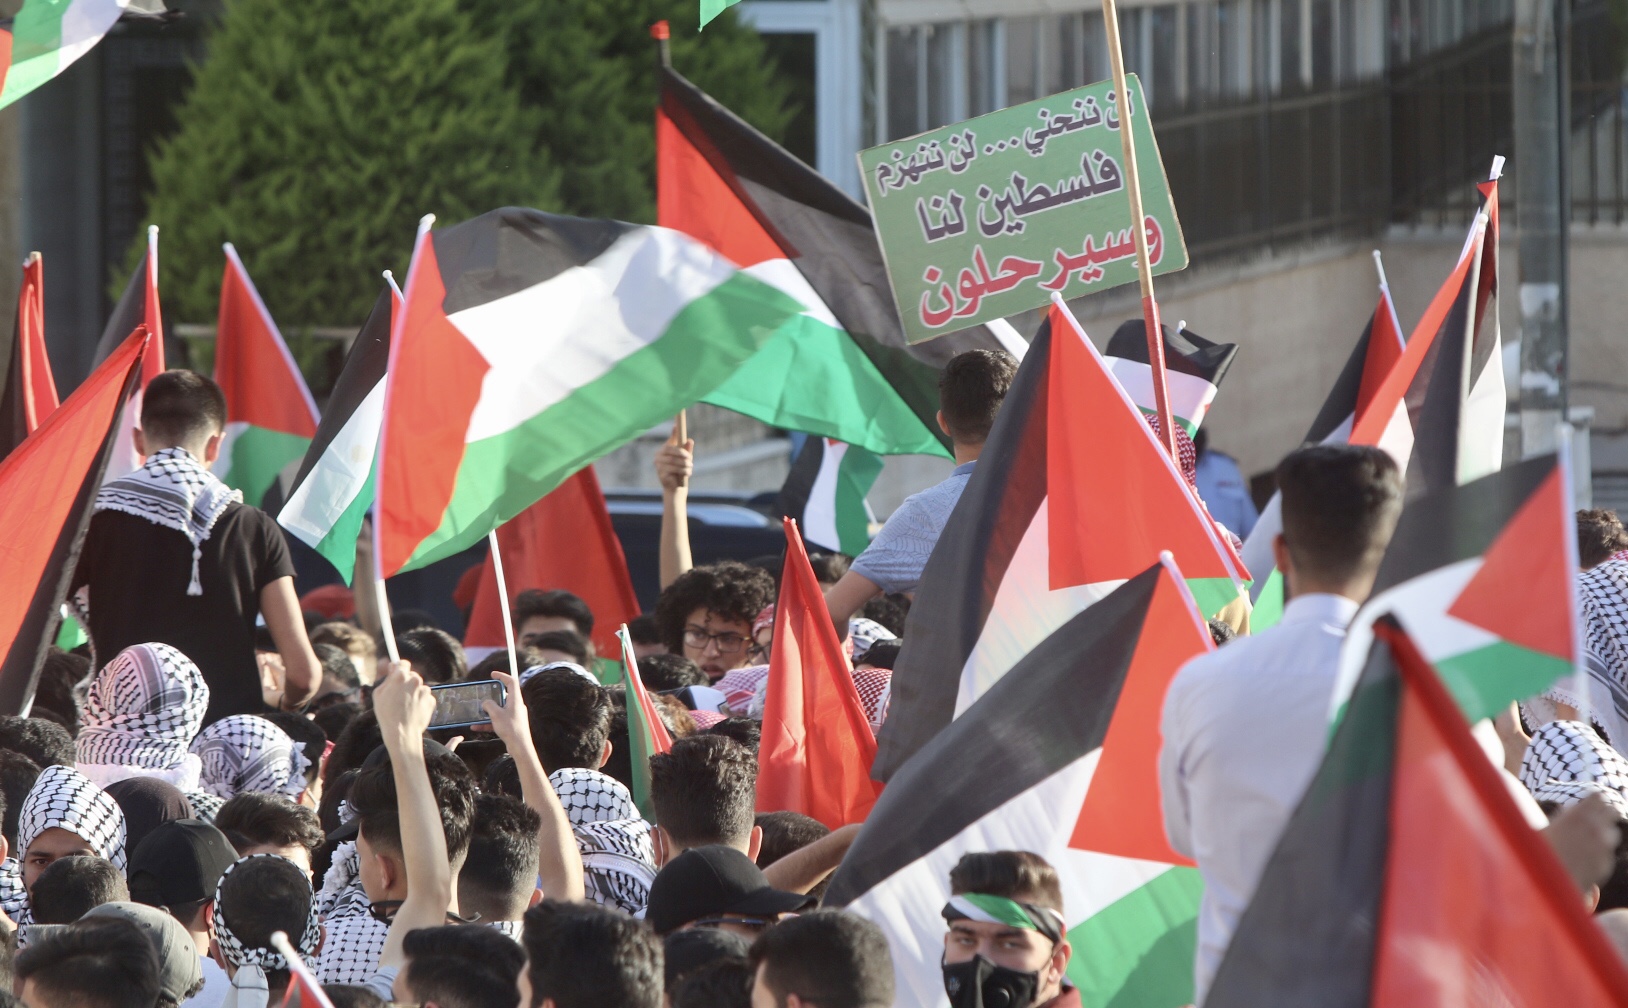 جانب من الاعتصام التضامي مع الفلسطينيين في ساحة مسجد الكالوتي، 16 أيار/مايو 2021. (صلاح ملكاوي / المملكة)